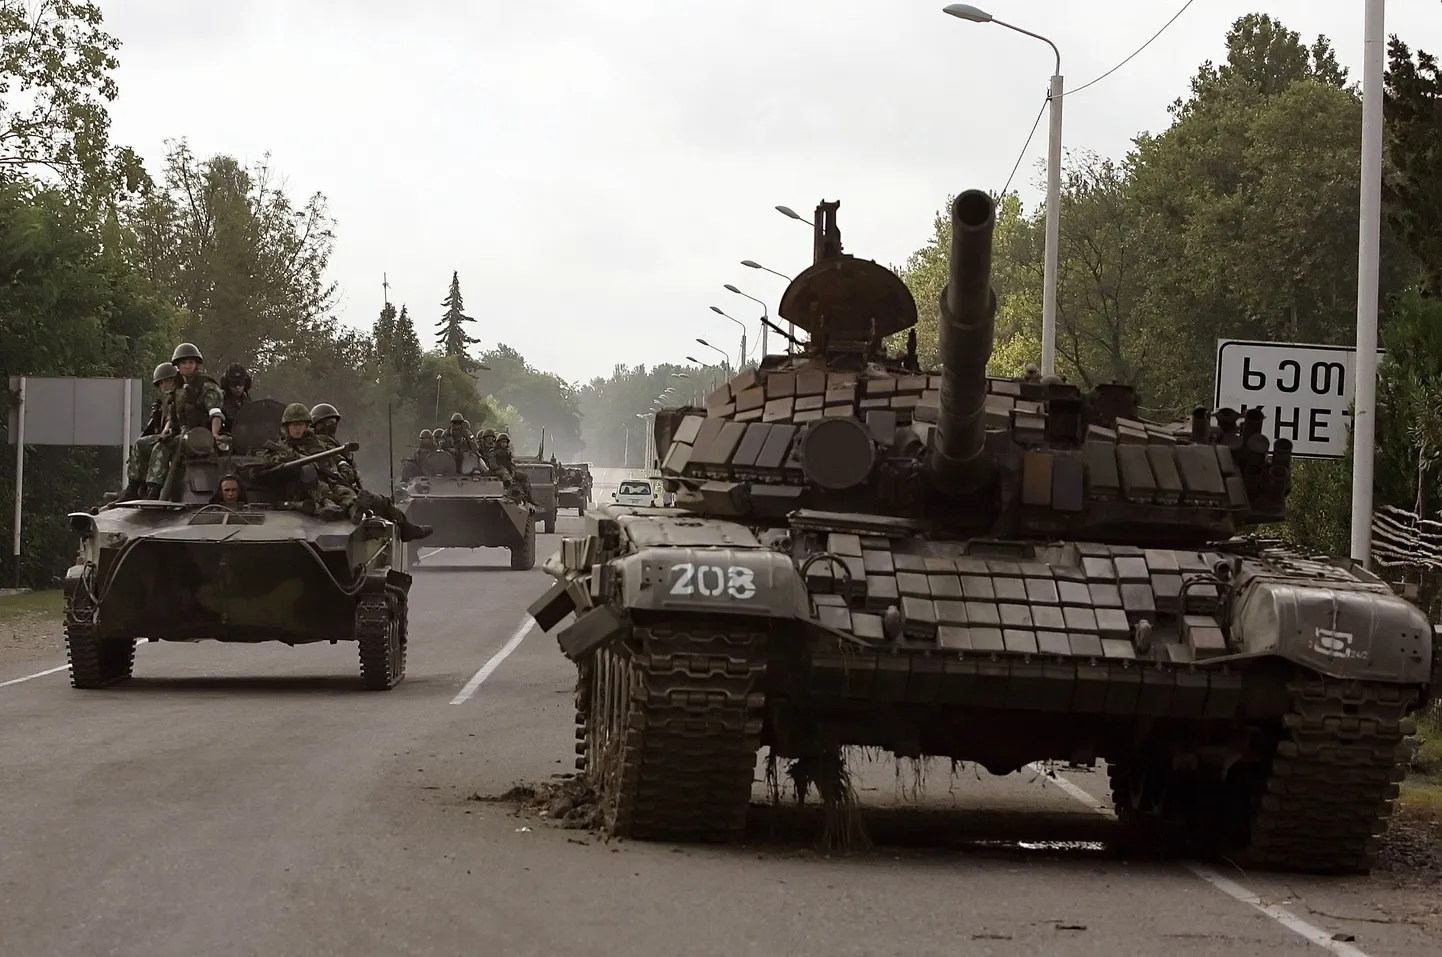 Vene sõjaväekonvoi möödub purustatud tankist Kheta külas, liikudes Gruusia-Abhaasia piiri poole.